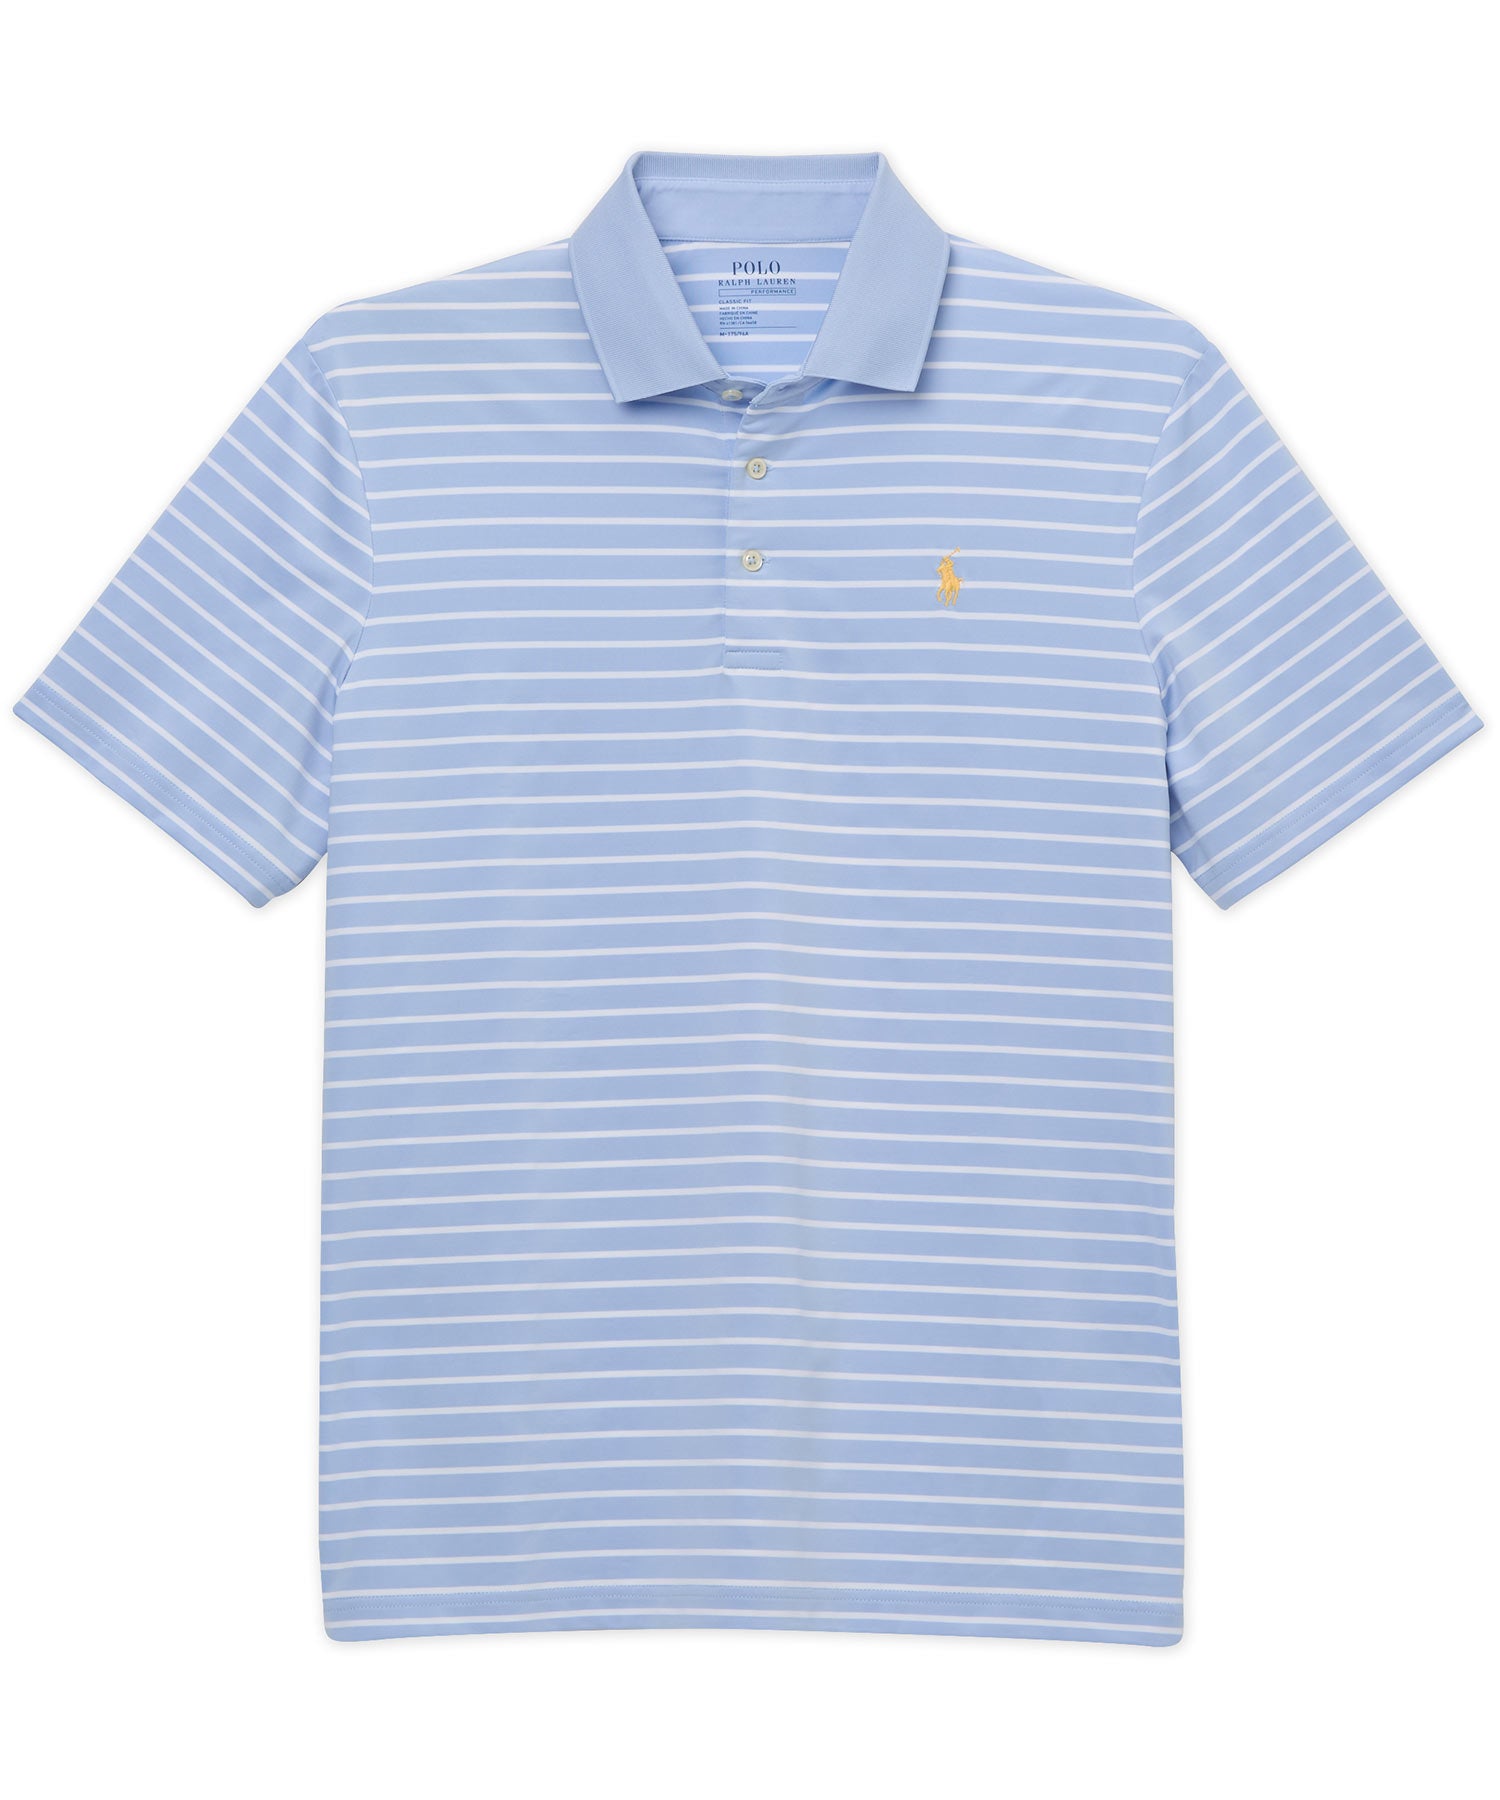 Polo Ralph Lauren Short Sleeve Soft Touch Cotton Stripe Polo Knit Shir -  Westport Big & Tall